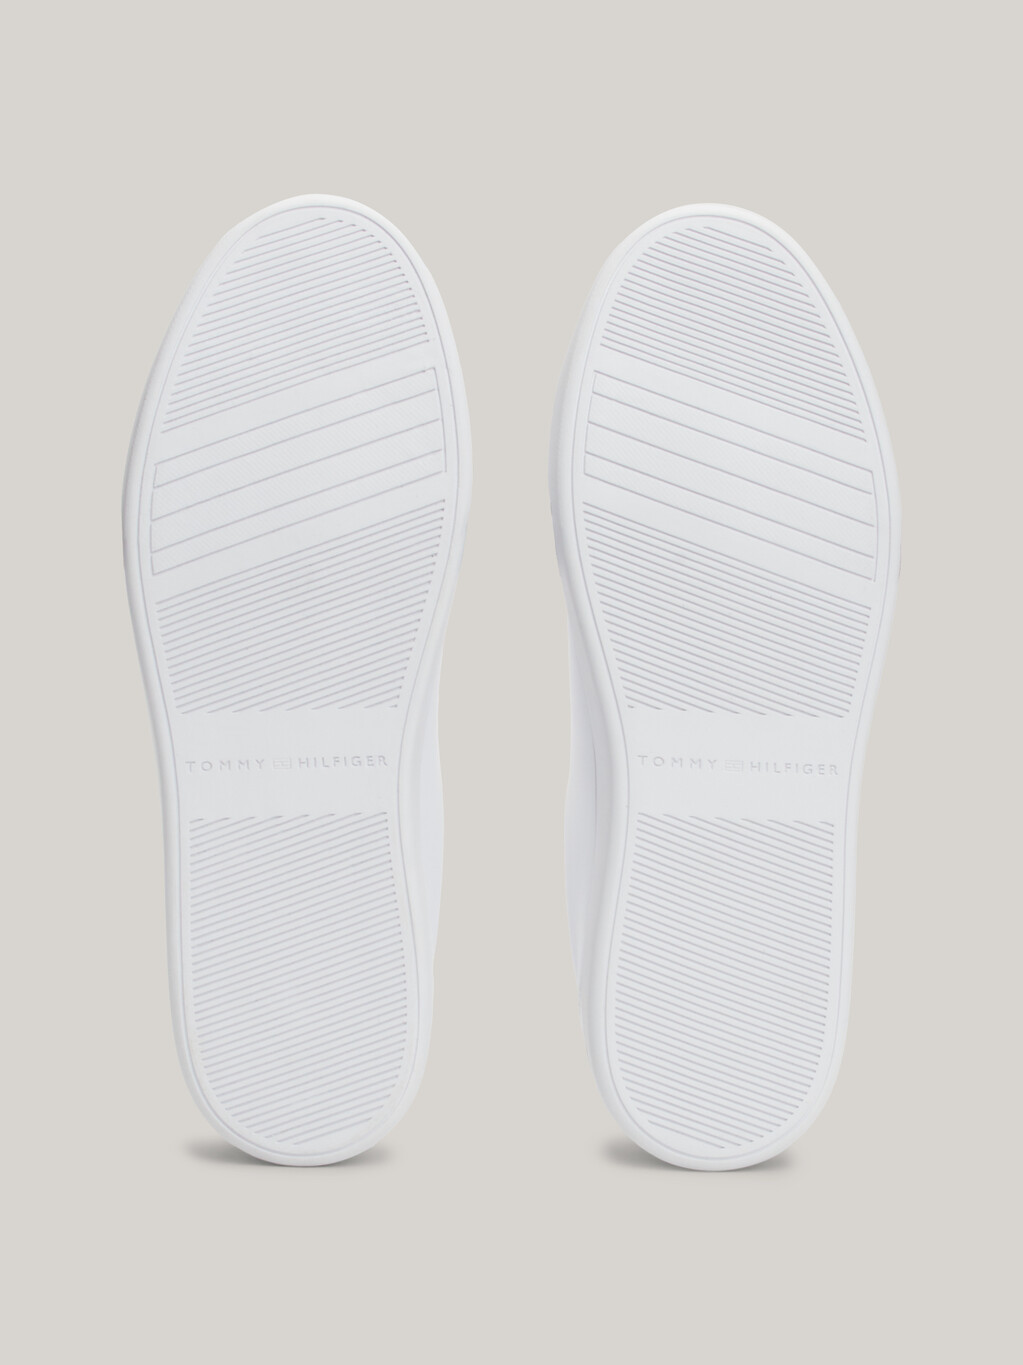 Essential 皮革運動鞋, White, hi-res